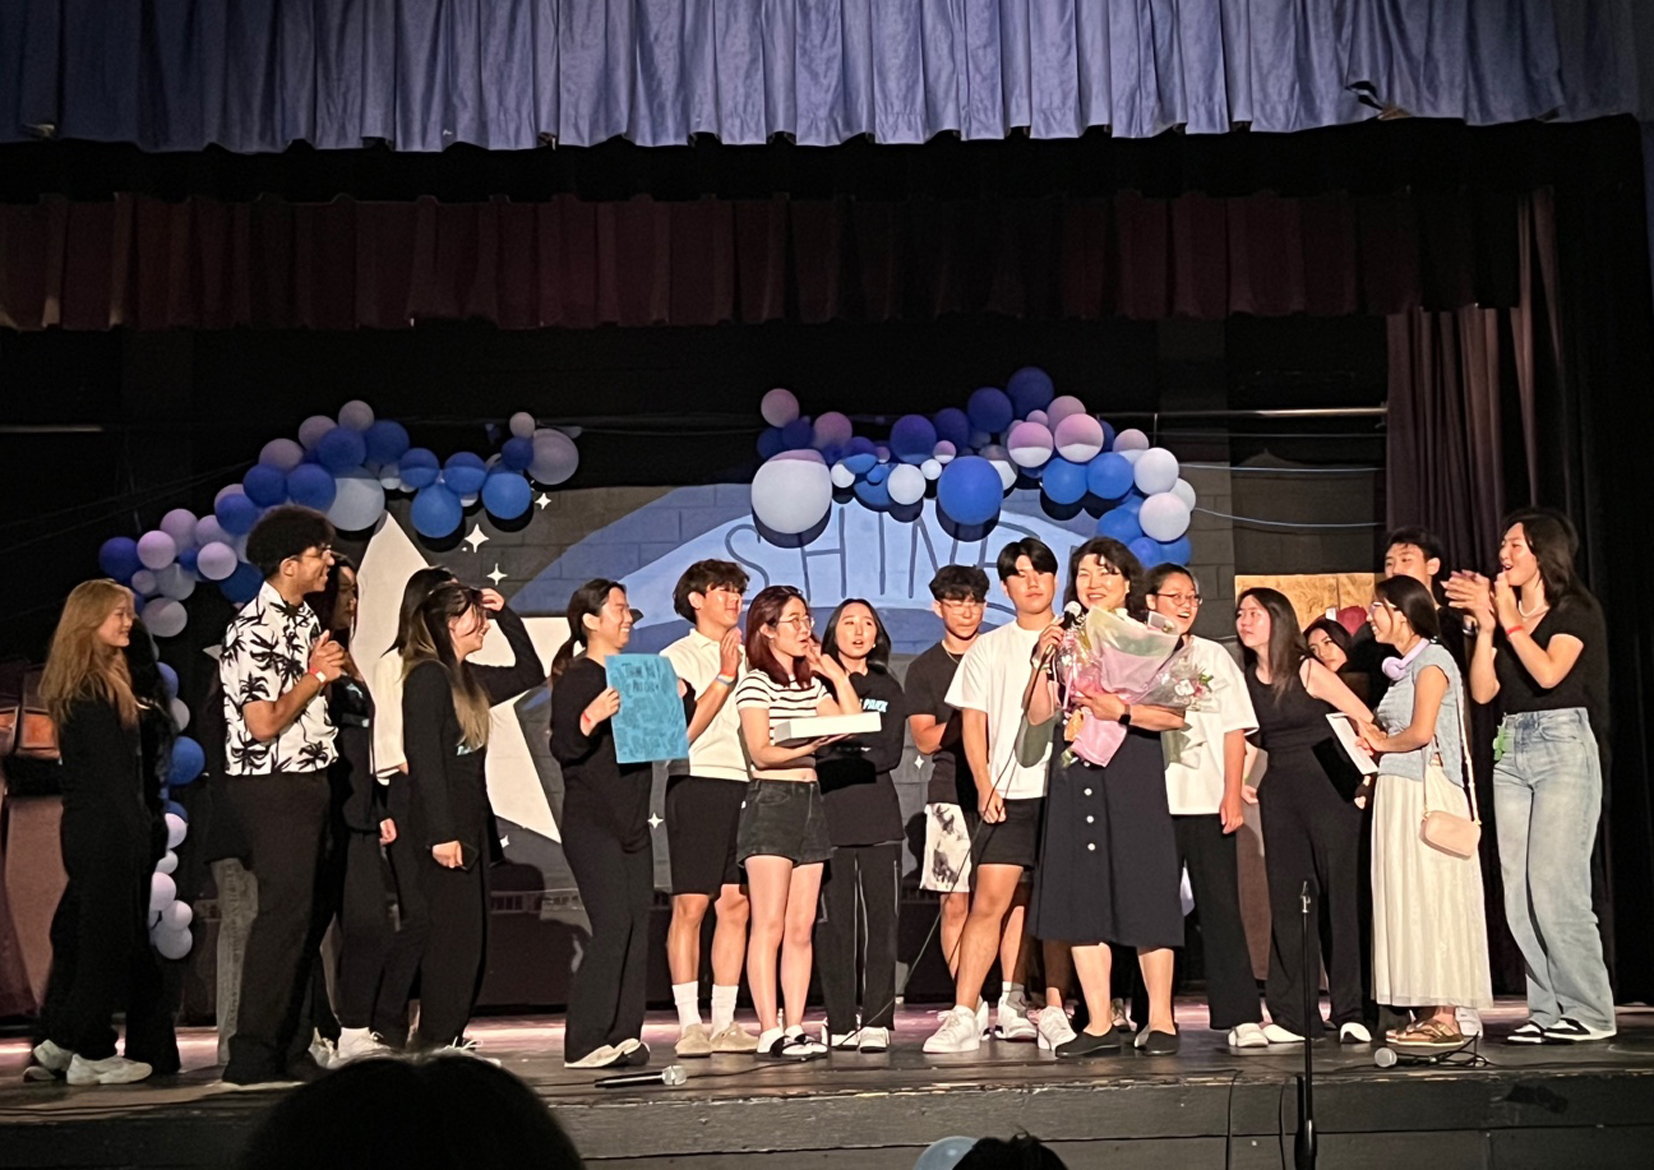  팰팍고교 한국어반은 어려운 학생들을 돕기 위해 지난 2일 학교 강당에서 200여 명의 학생과 교사 등이 참석한 가운데 '호프클럽 콘서트(Hope Club Concert)를 열었다. [팰팍고교 한국어반] 